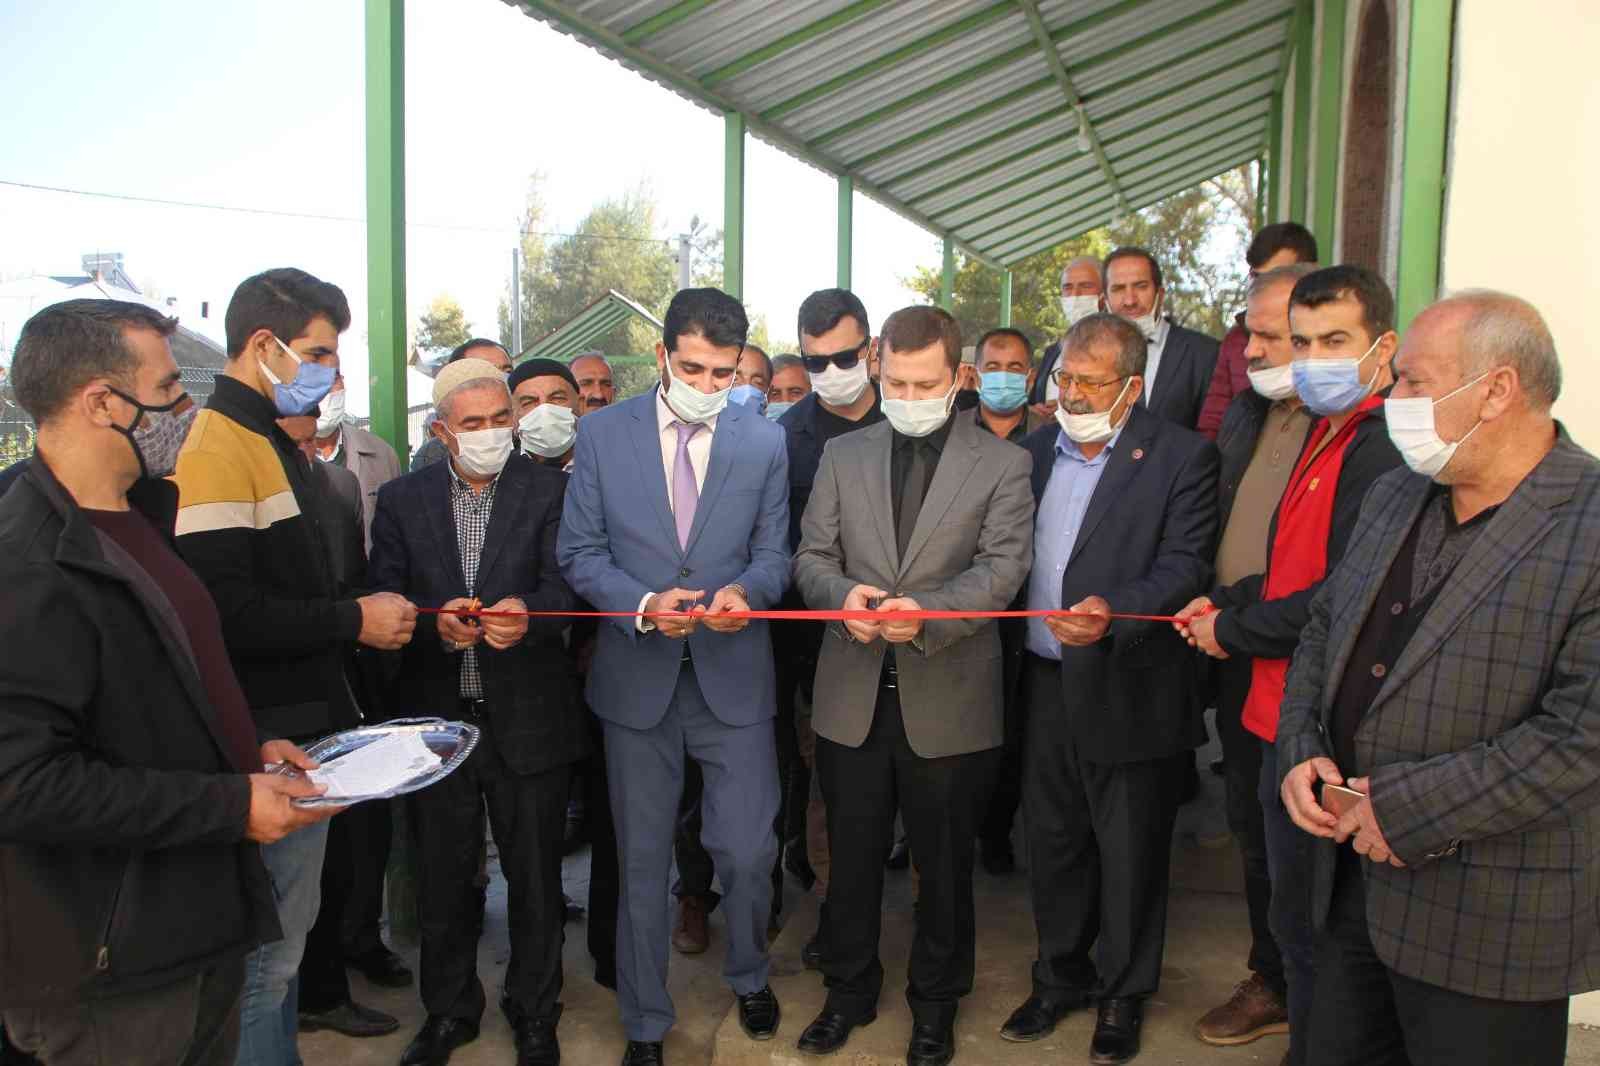 Gölağılı Köyü Kur’an Kursu törenle açıldı #mus